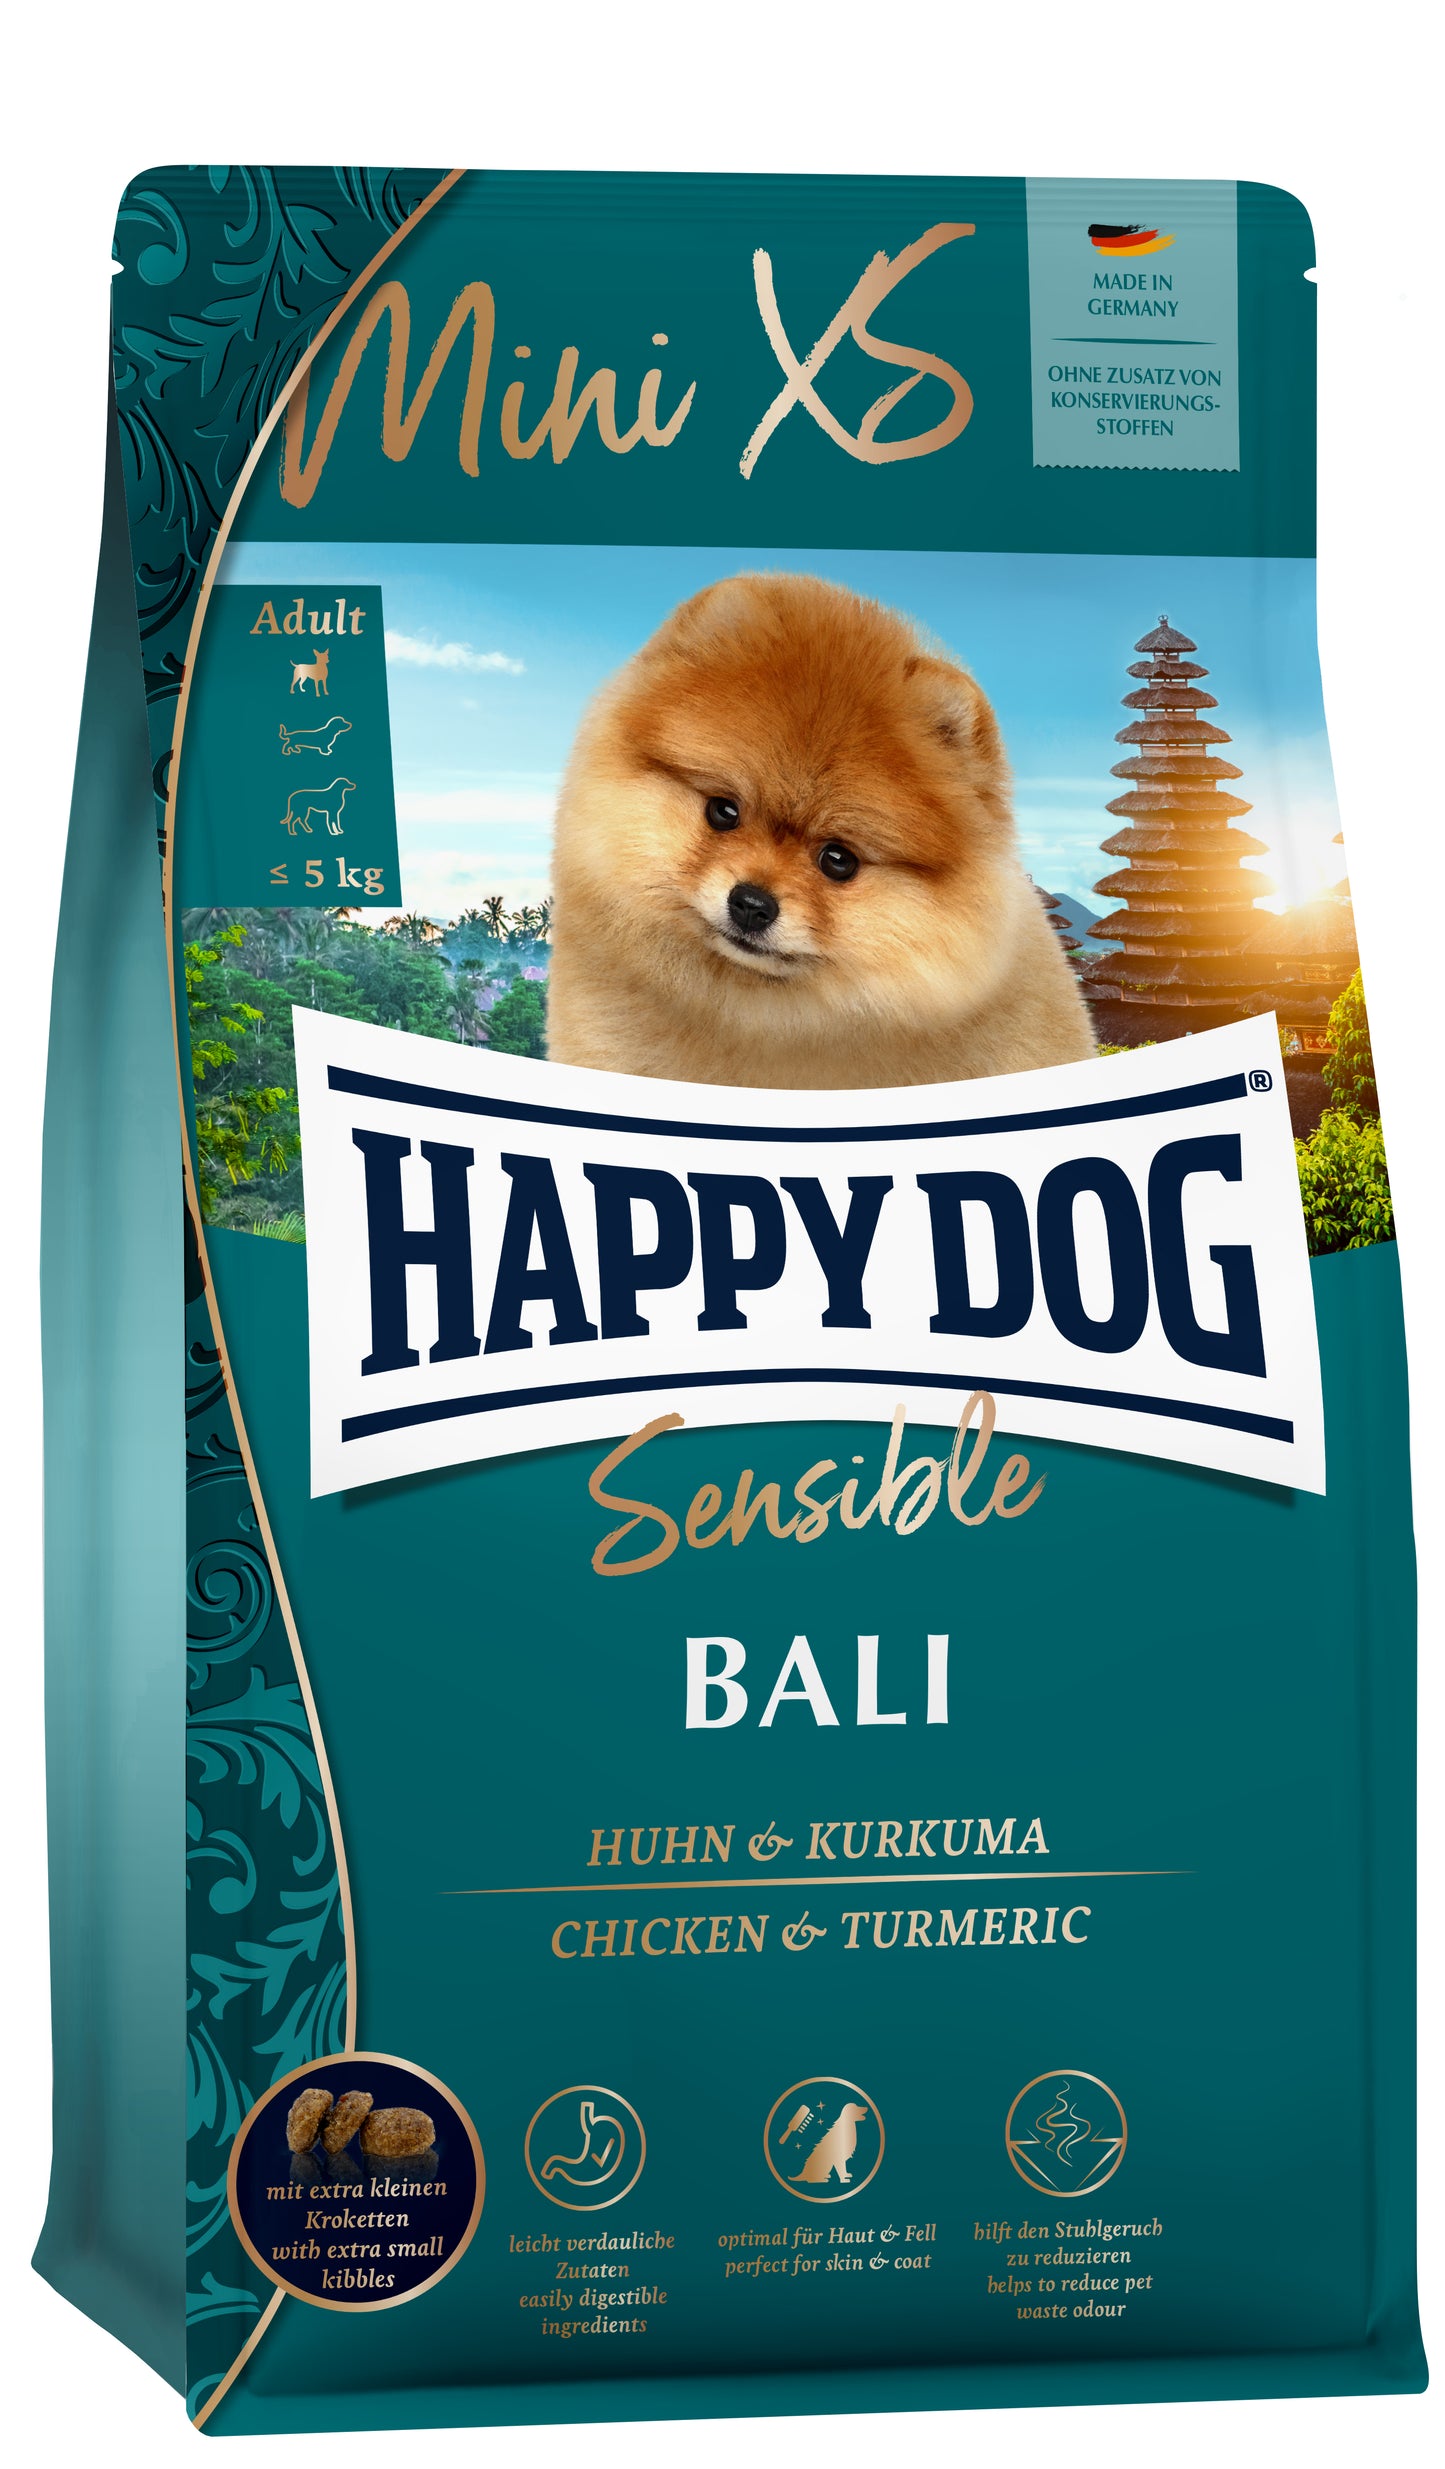 Happy Dog Mini XS Bali